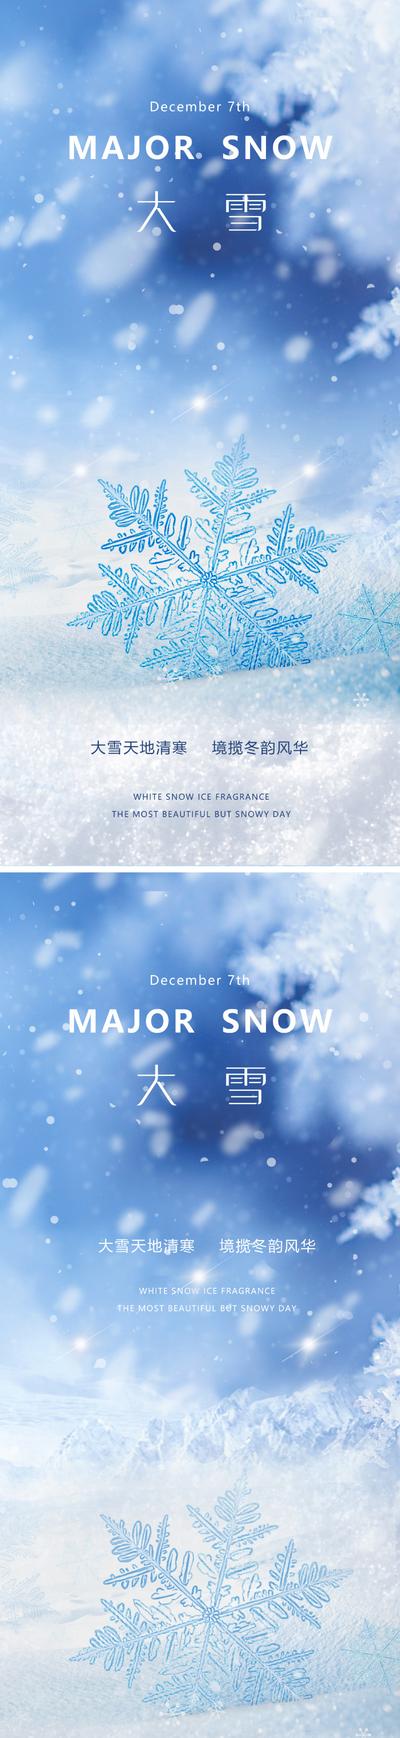 南门网 广告 海报 地产 大雪 医美 节气 美业 小雪 雪花 下雪 清新 淡雅 蓝色 高级 朦胧 意境 唯美 系列